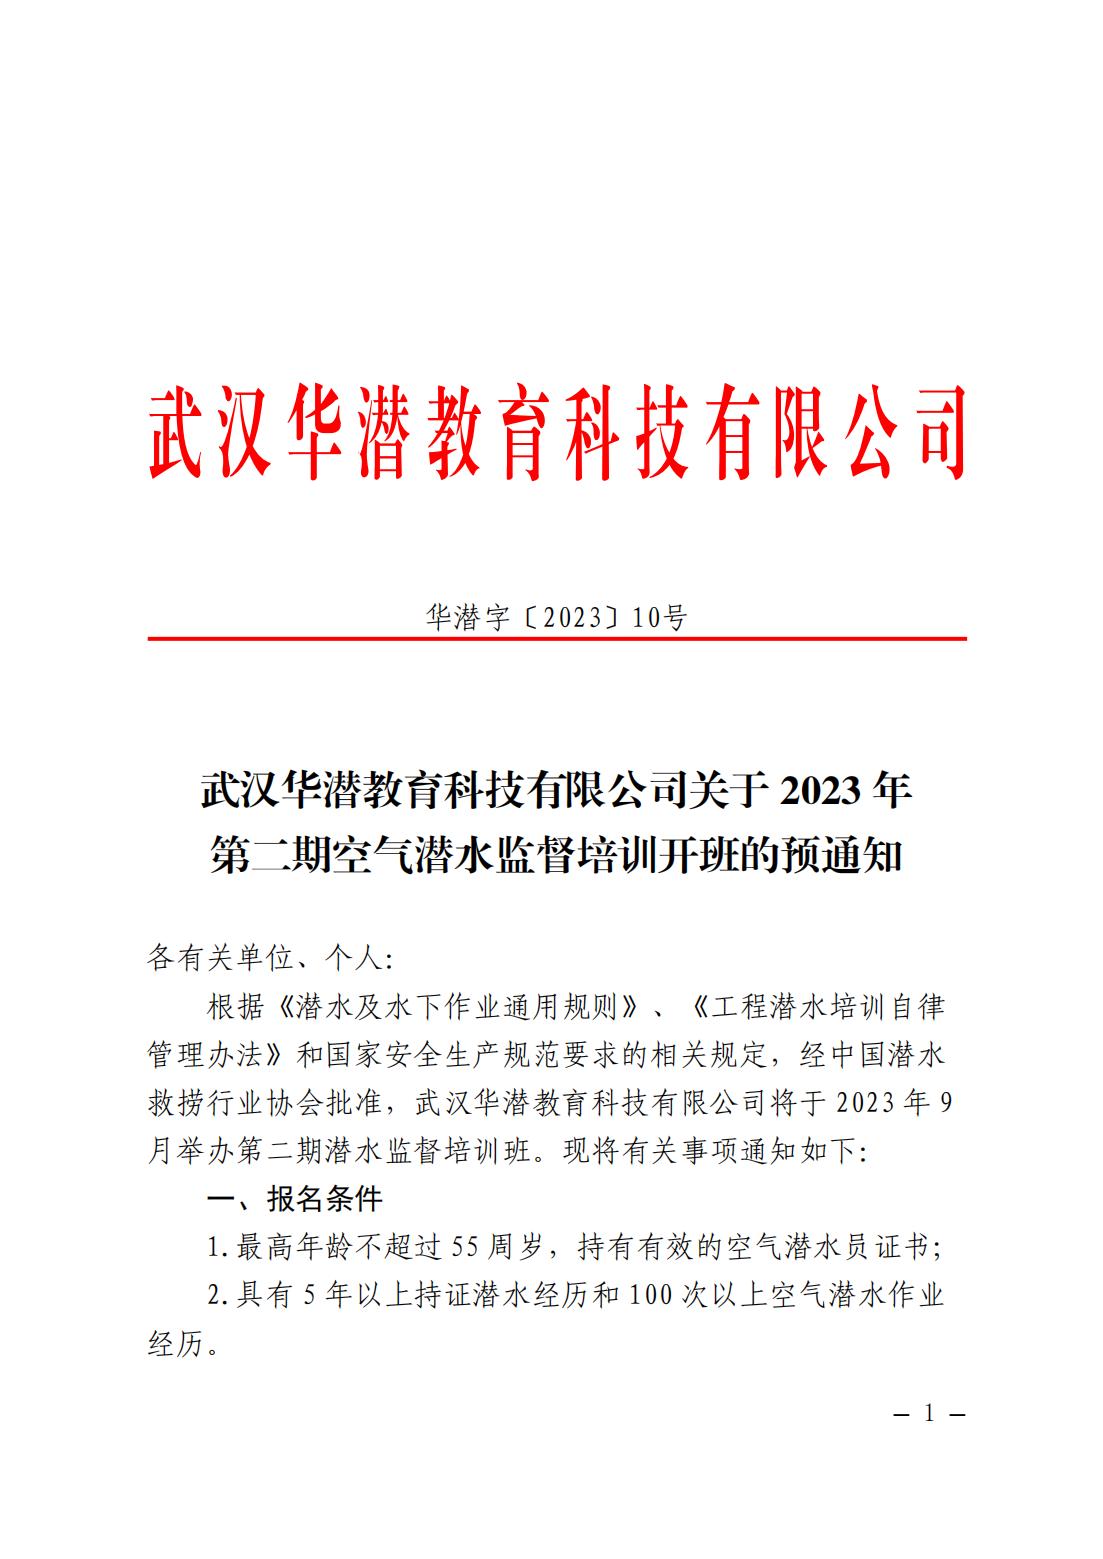 武汉华潜教育科技有限公司关于2023年第二期空气潜水监督培训开班的预通知(1)_00.jpg